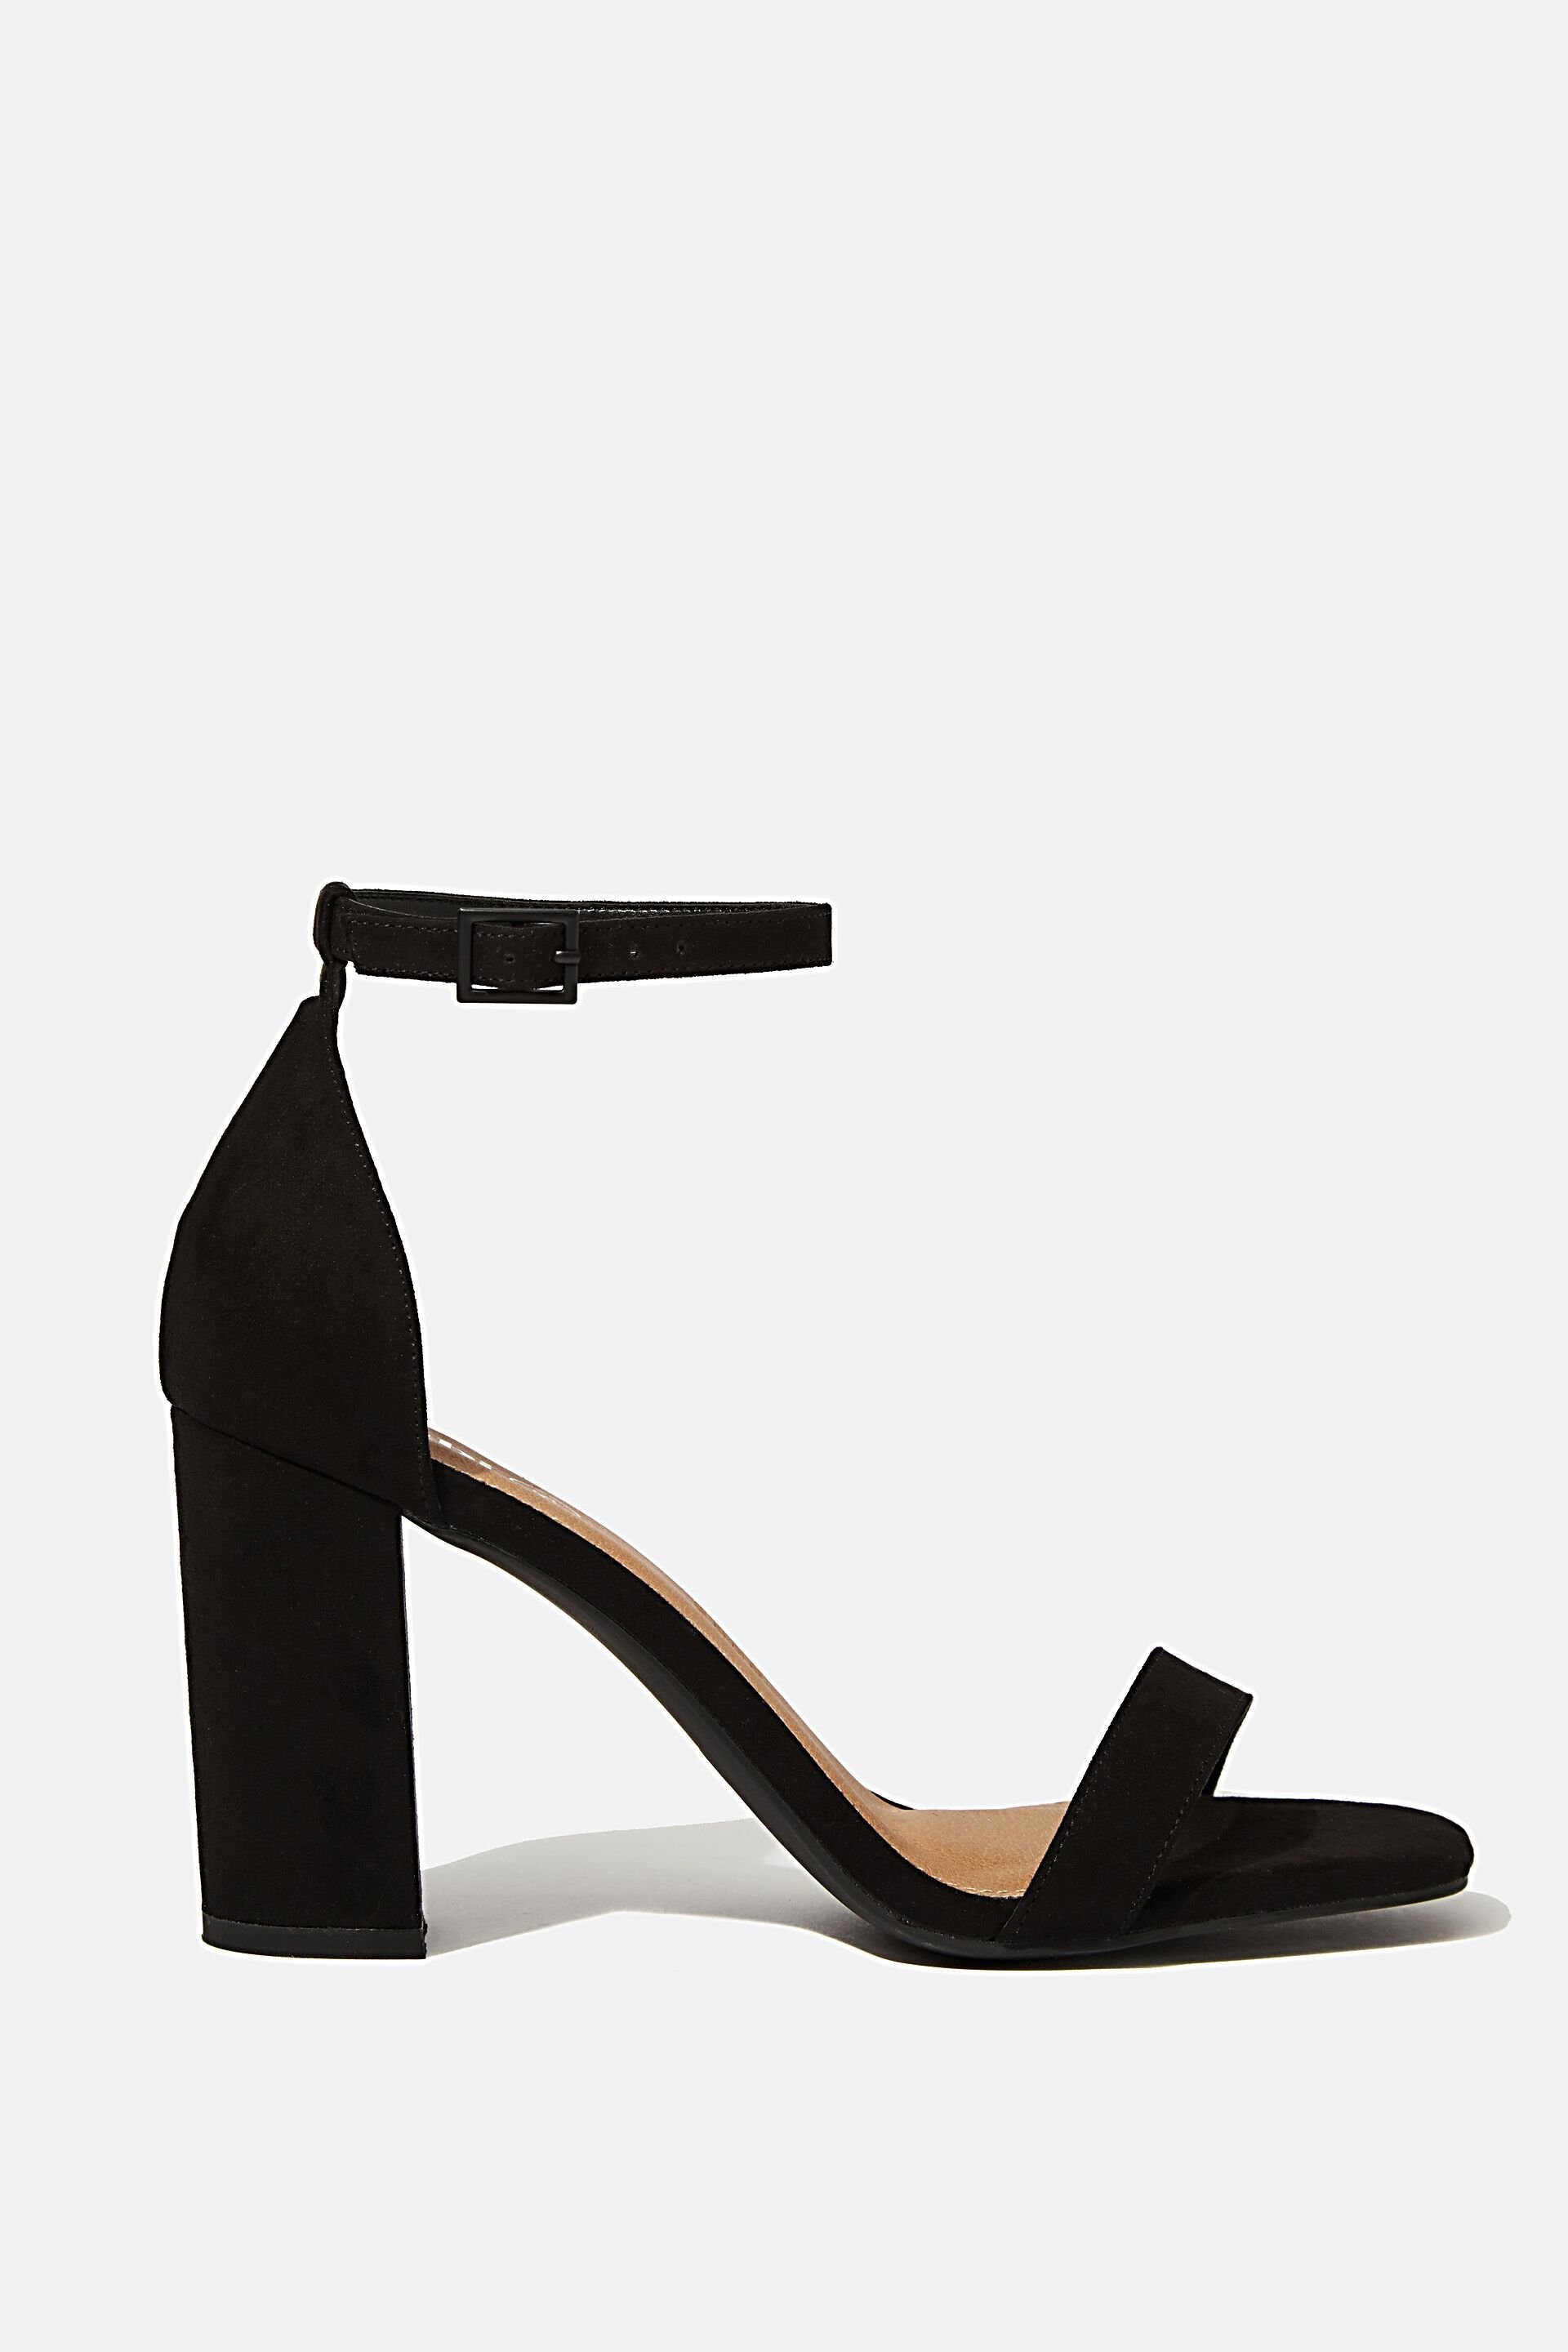 black chunky heels target